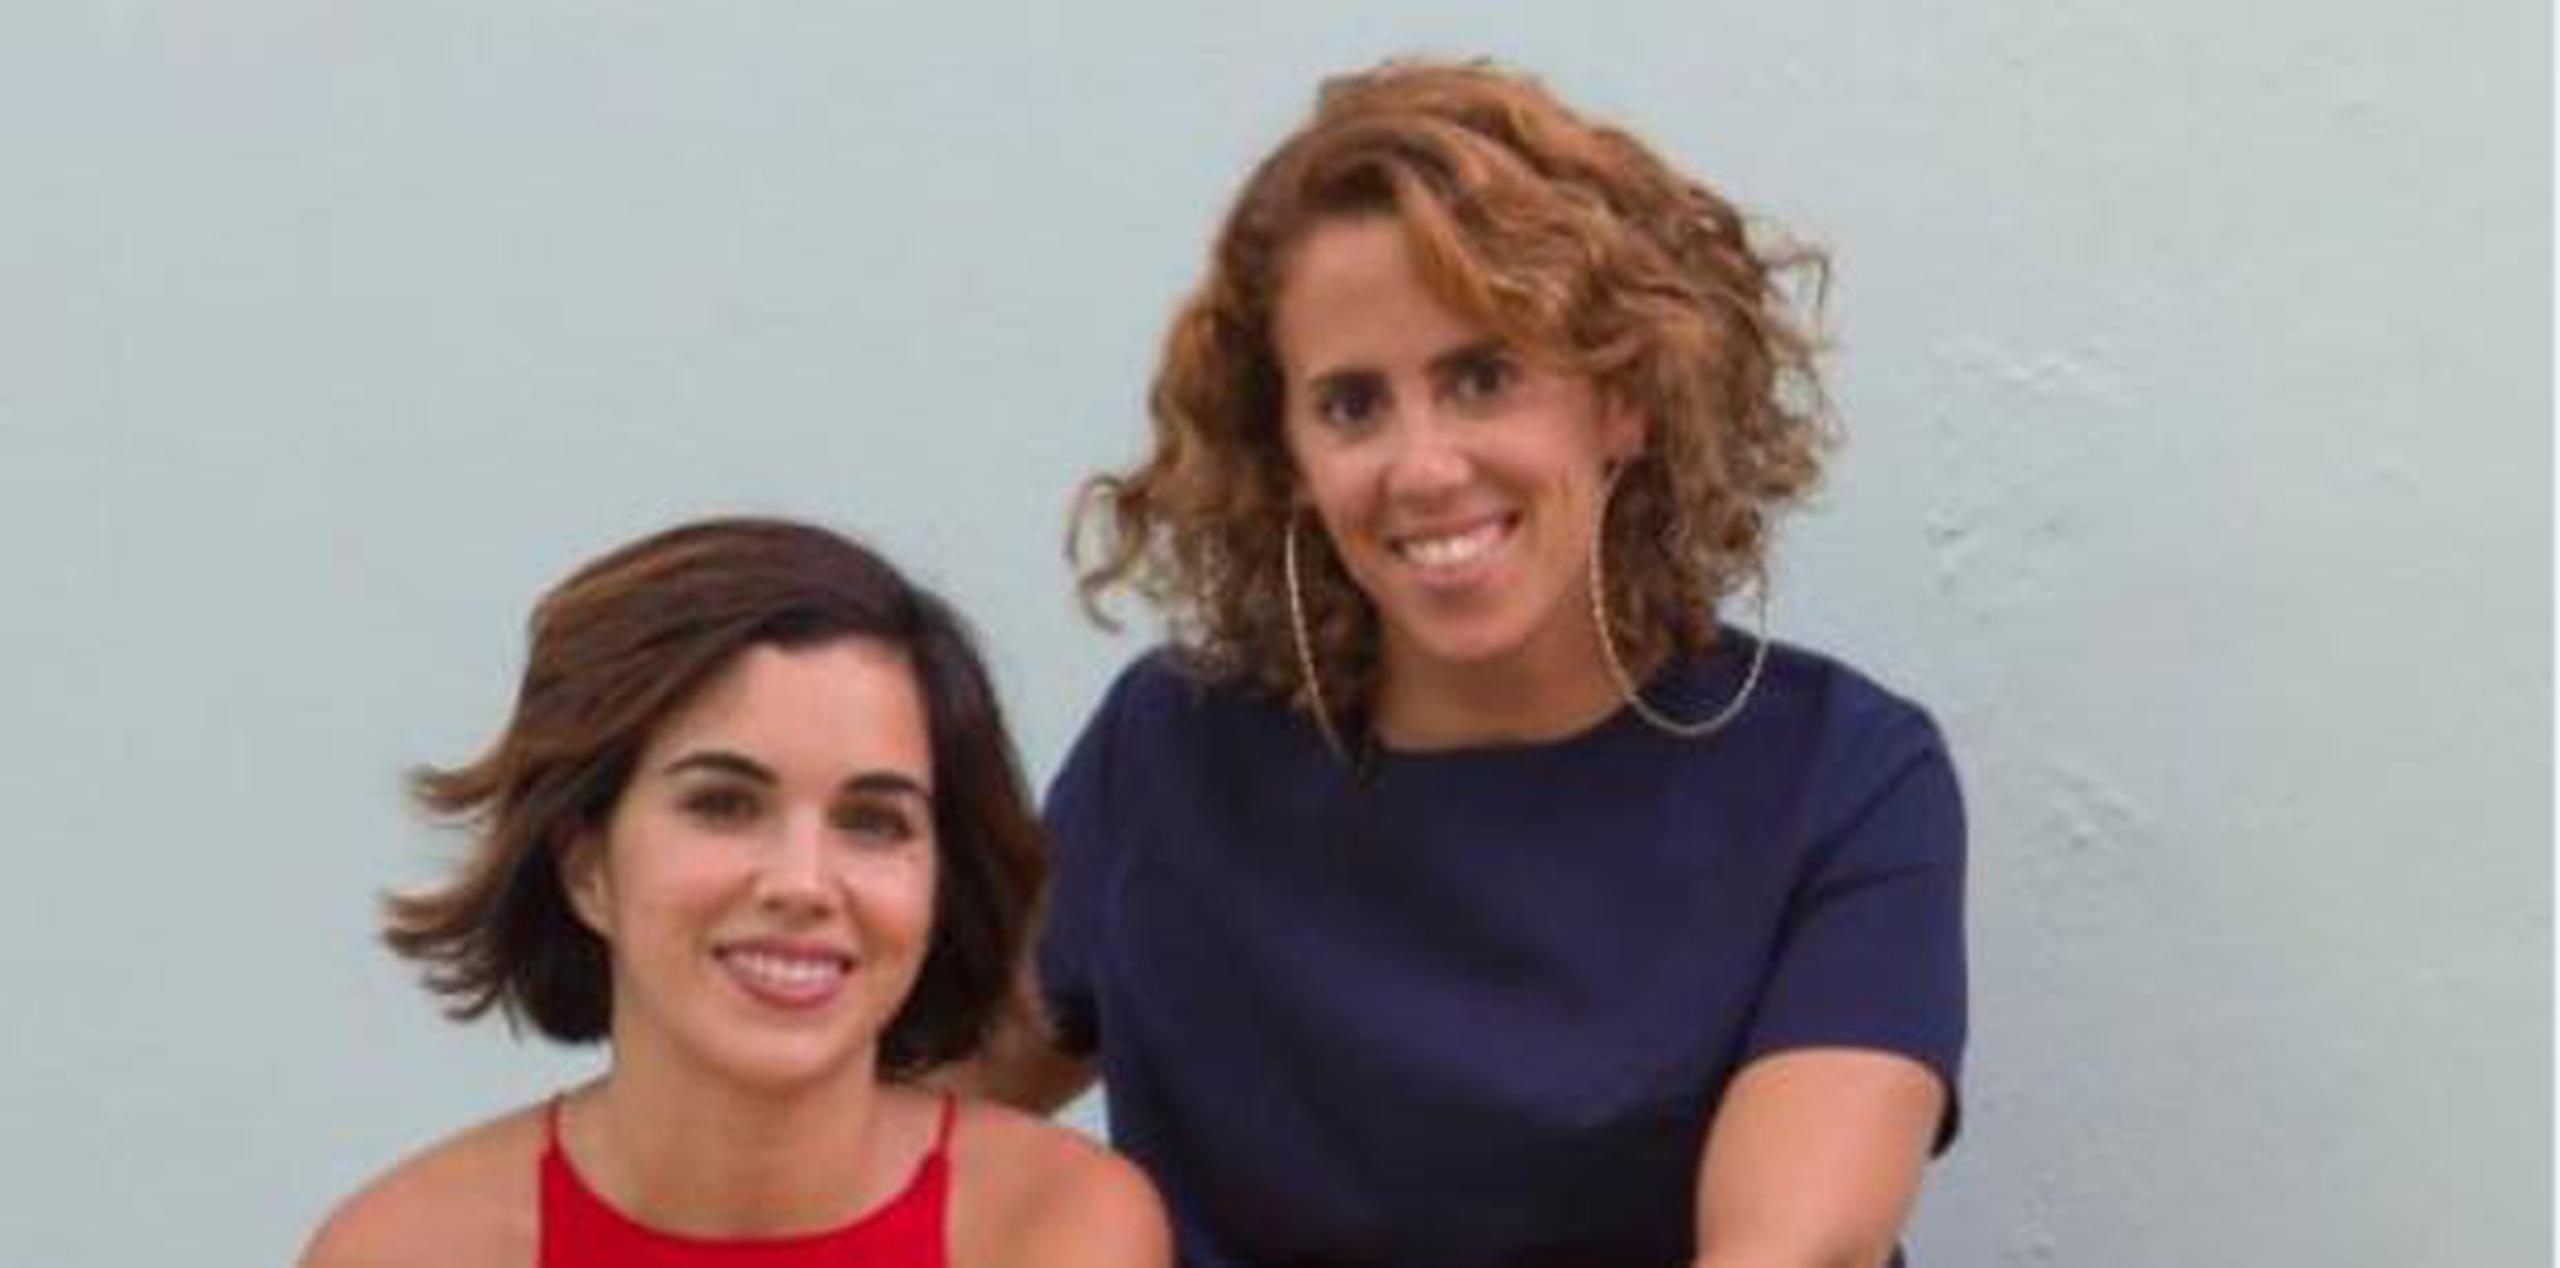 Las moderadoras del programa radial Alzando la voz, Laura Rexach y Carla López de Azúa, se sienten satisfechas ante la oportunidad de ofrecer una plataforma para destacar los logros de sus invitadas. (Suministrada)